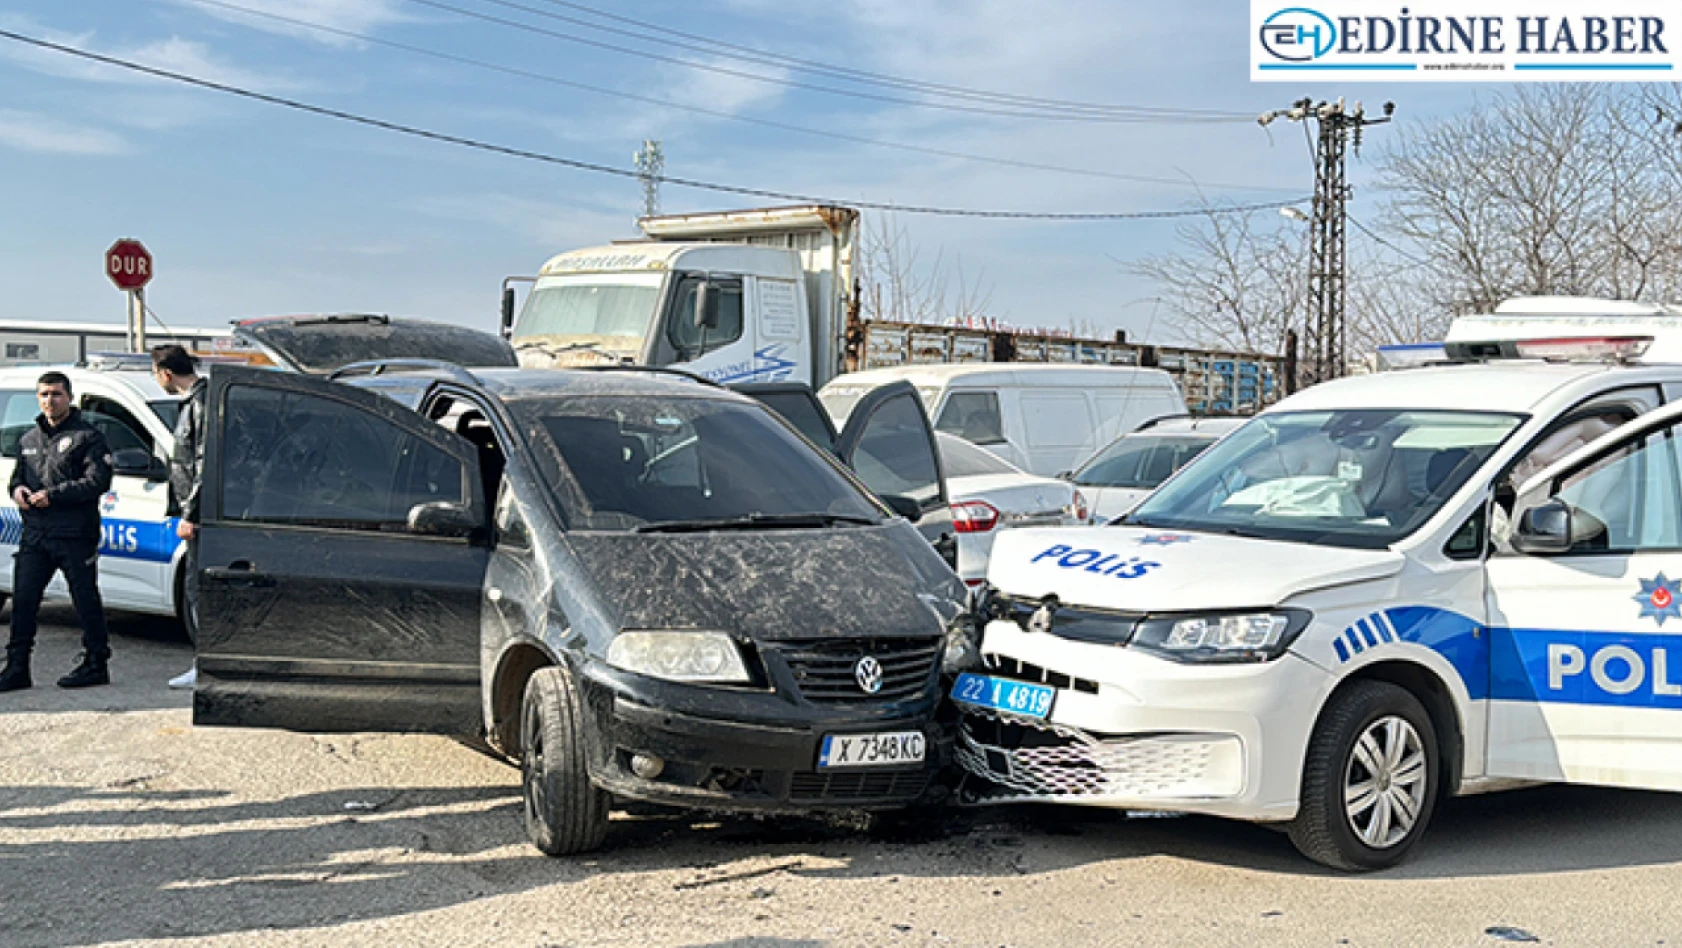 Edirne'de kaçan sürücü polis otosuna çarptı